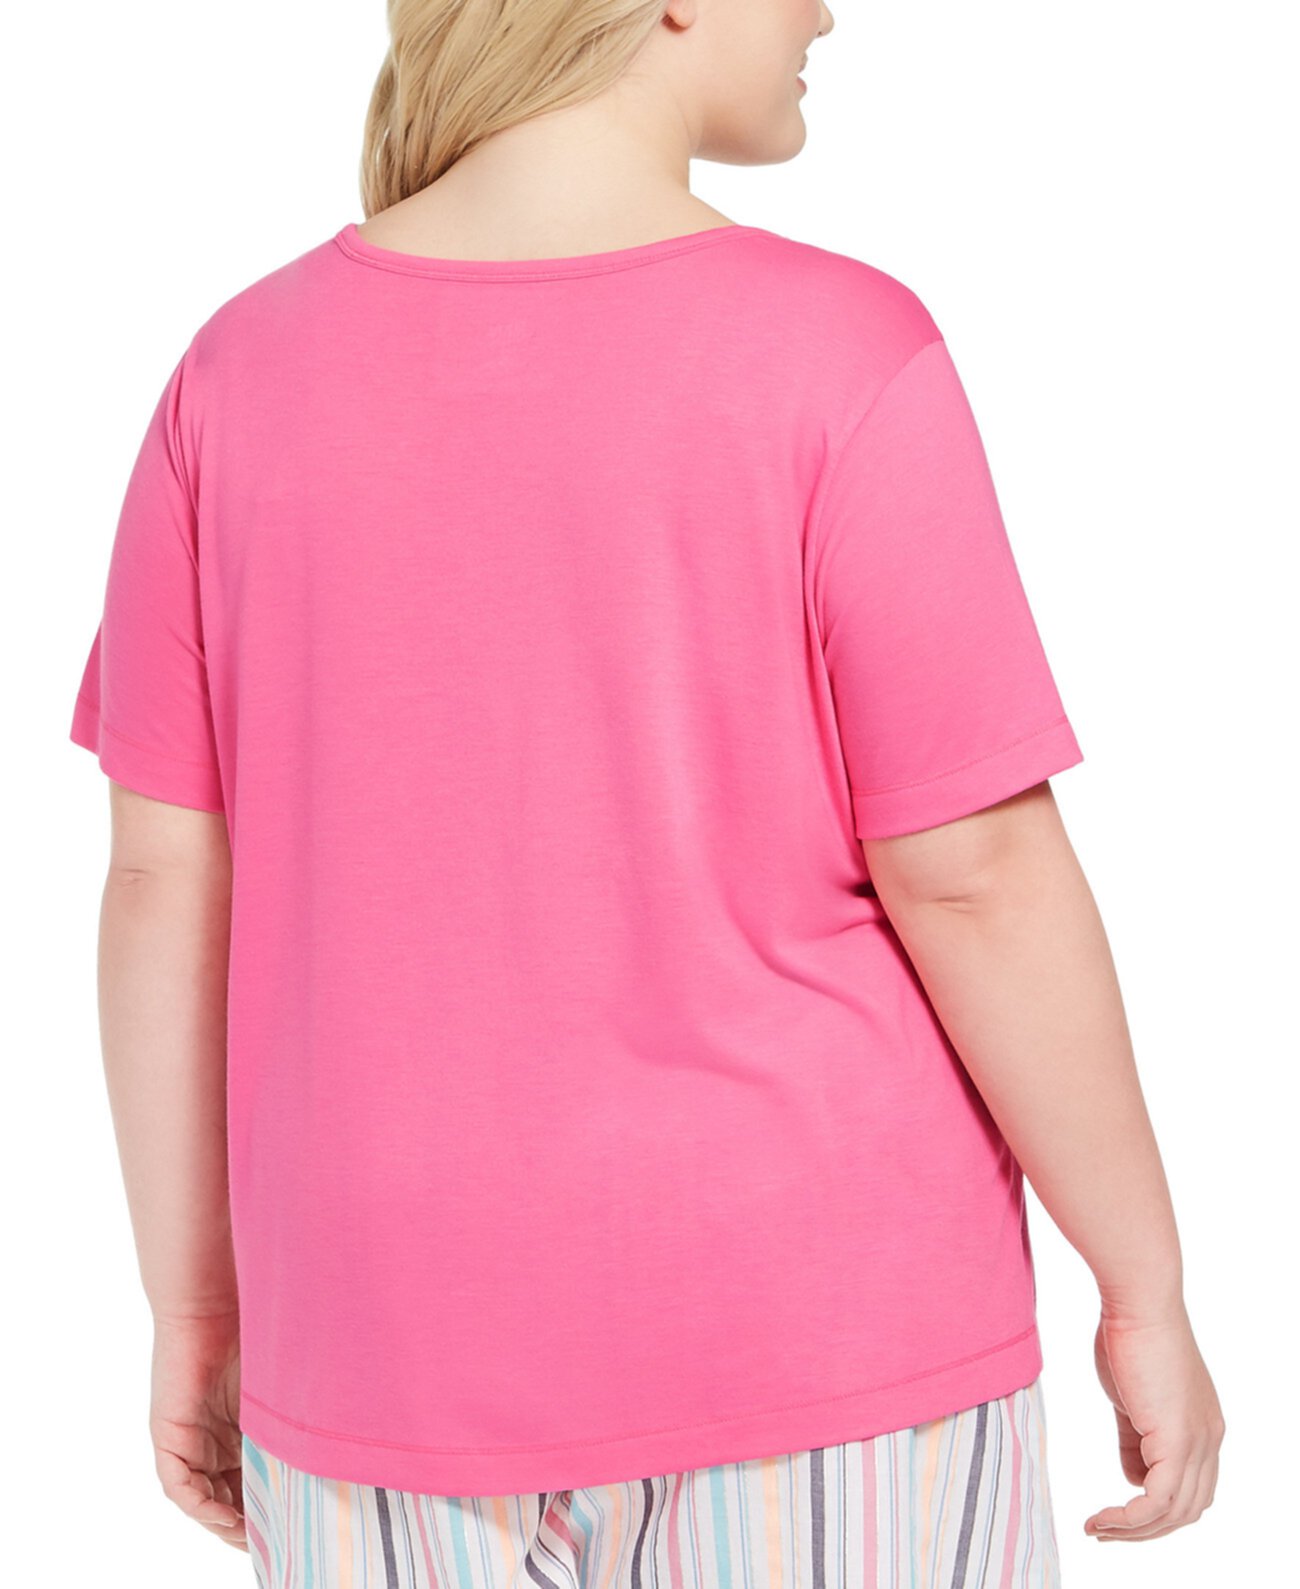 Пижамная футболка большого размера, созданная для Macy's Jenni